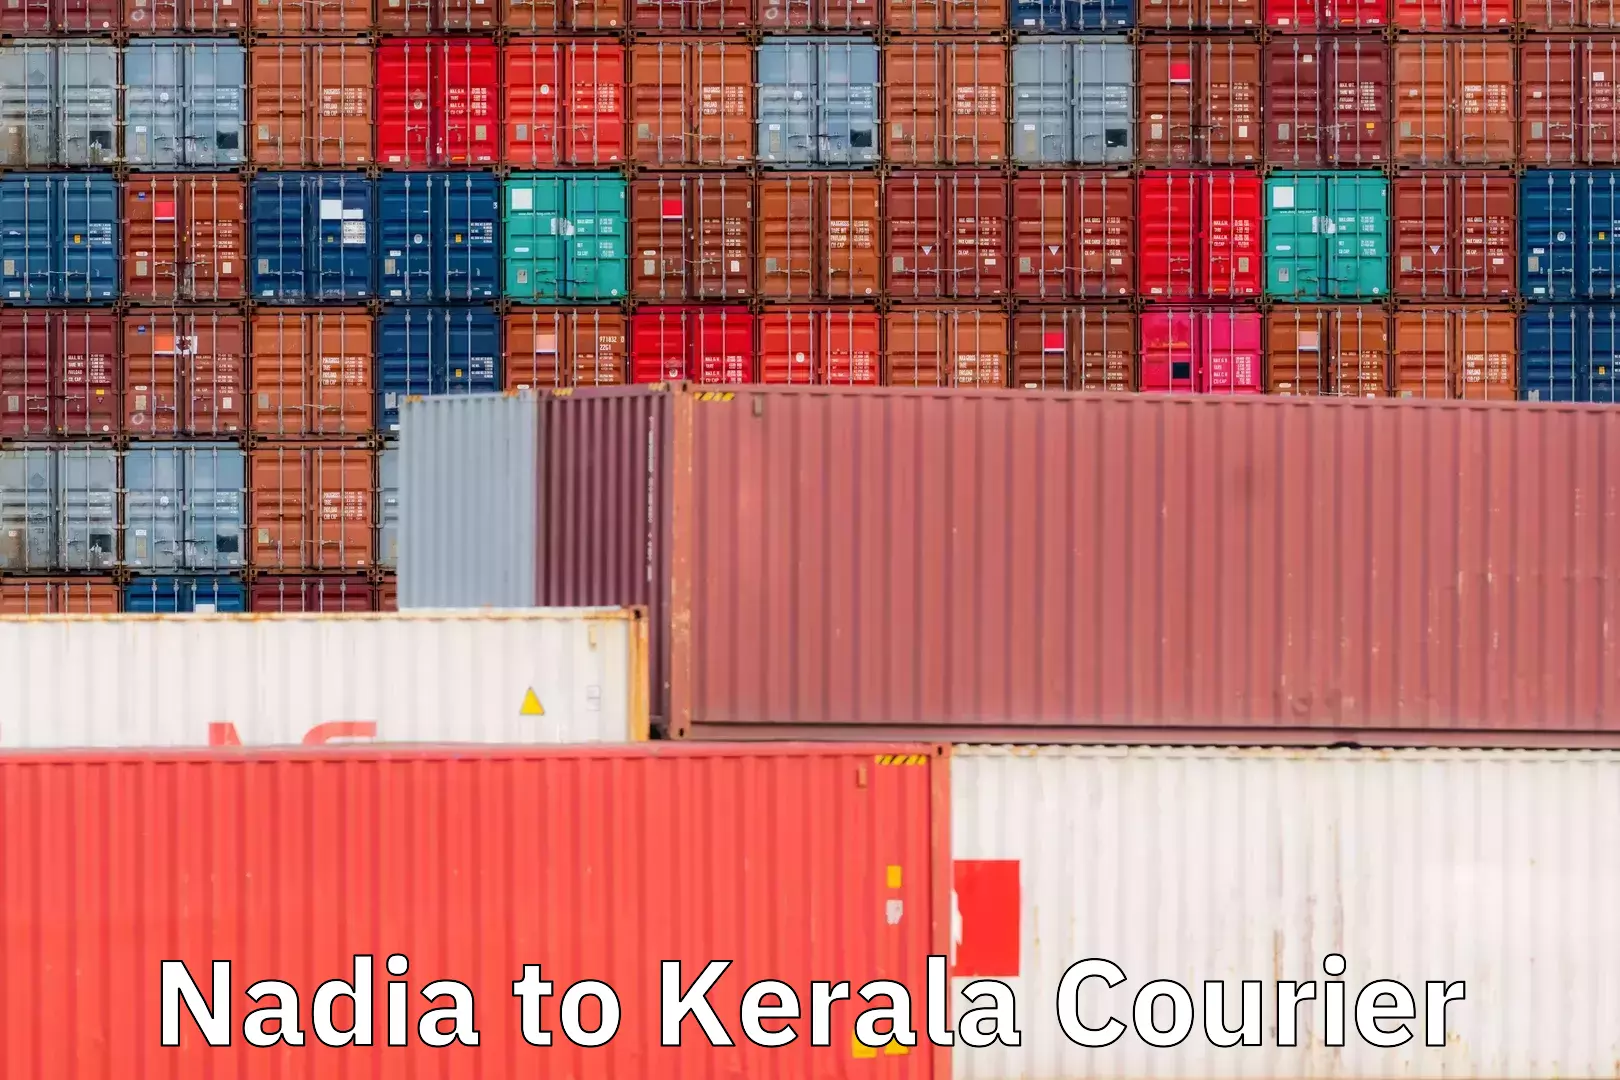 Comprehensive logistics solutions Nadia to Kerala